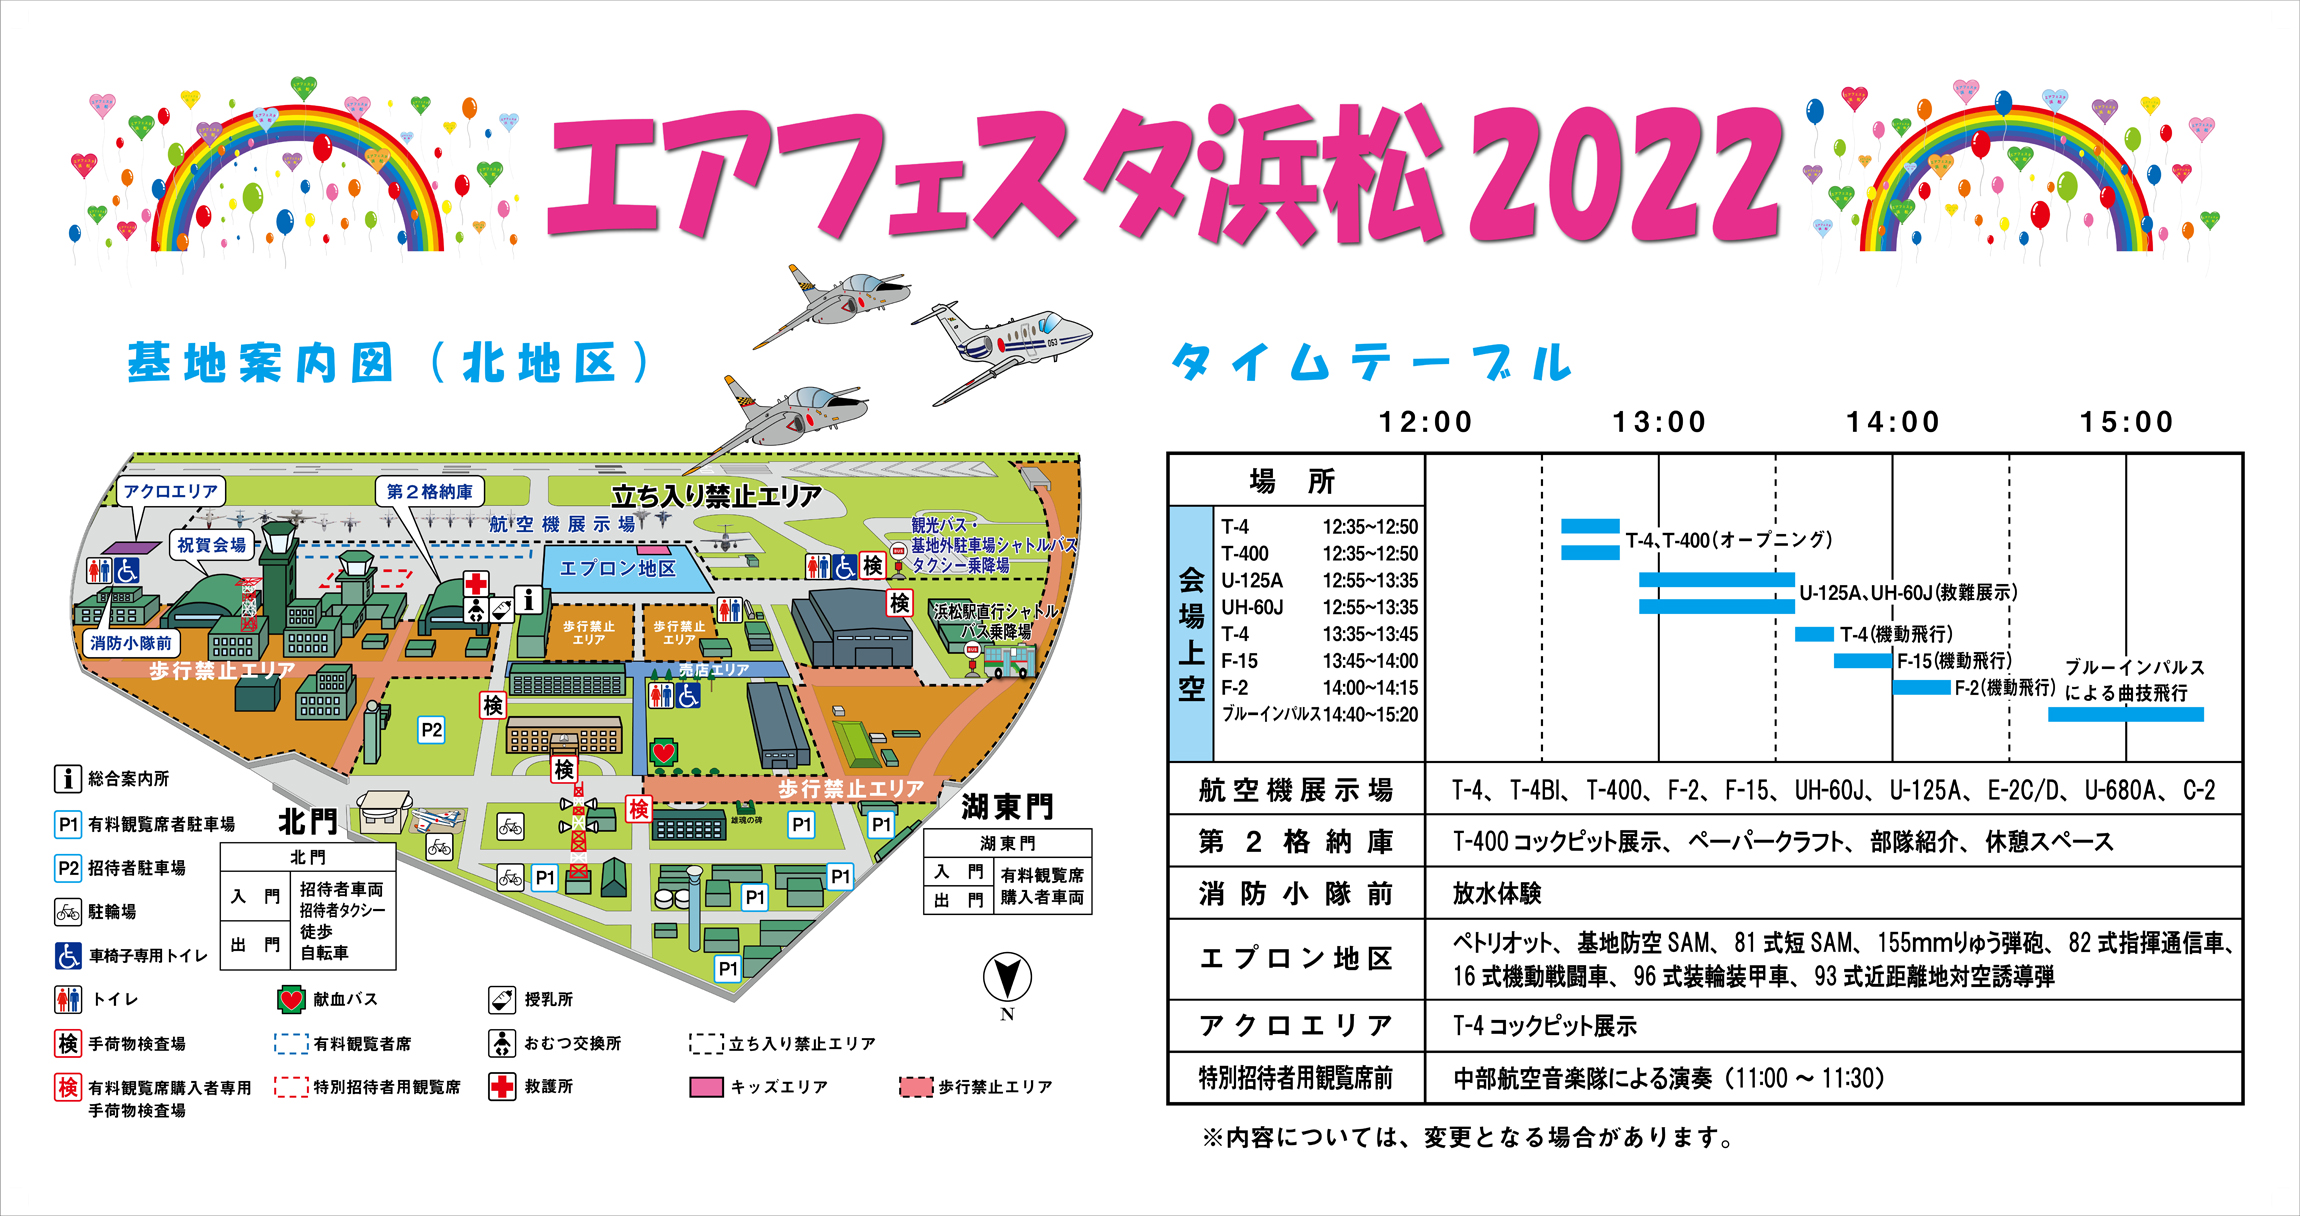 エアフェスタ浜松2022：会場図